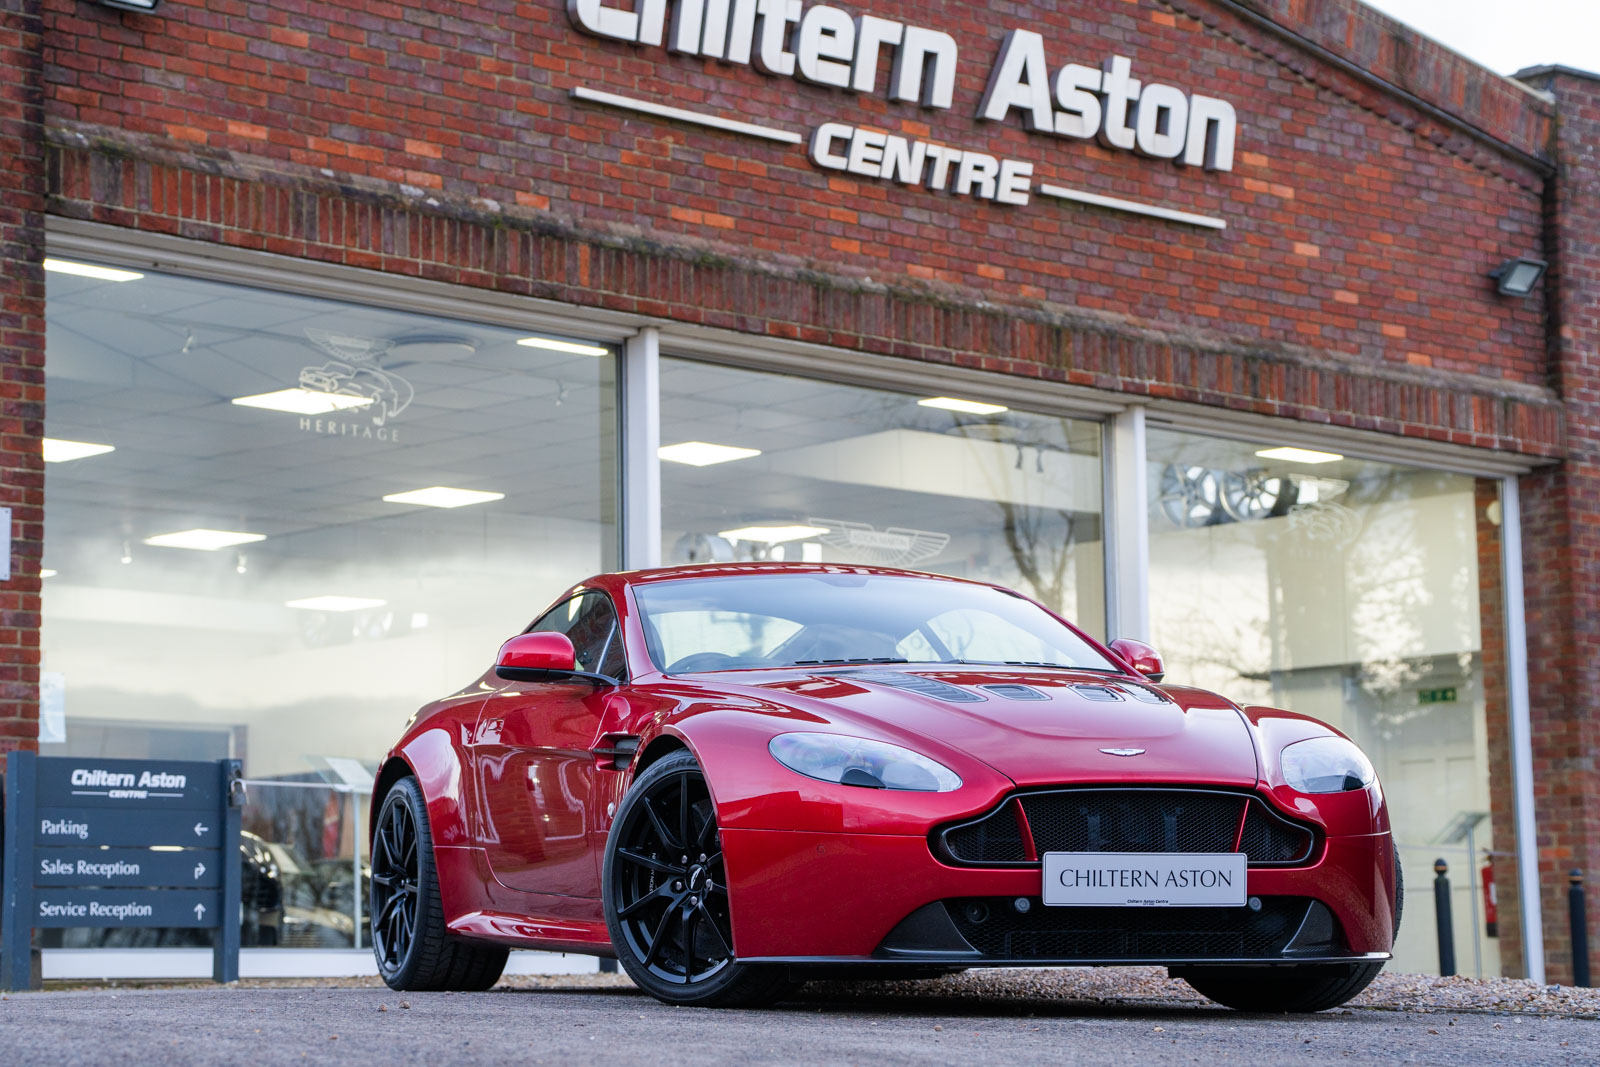 2014 Aston Martin V12 Vantage S Coupe - Chiltern Aston Centre